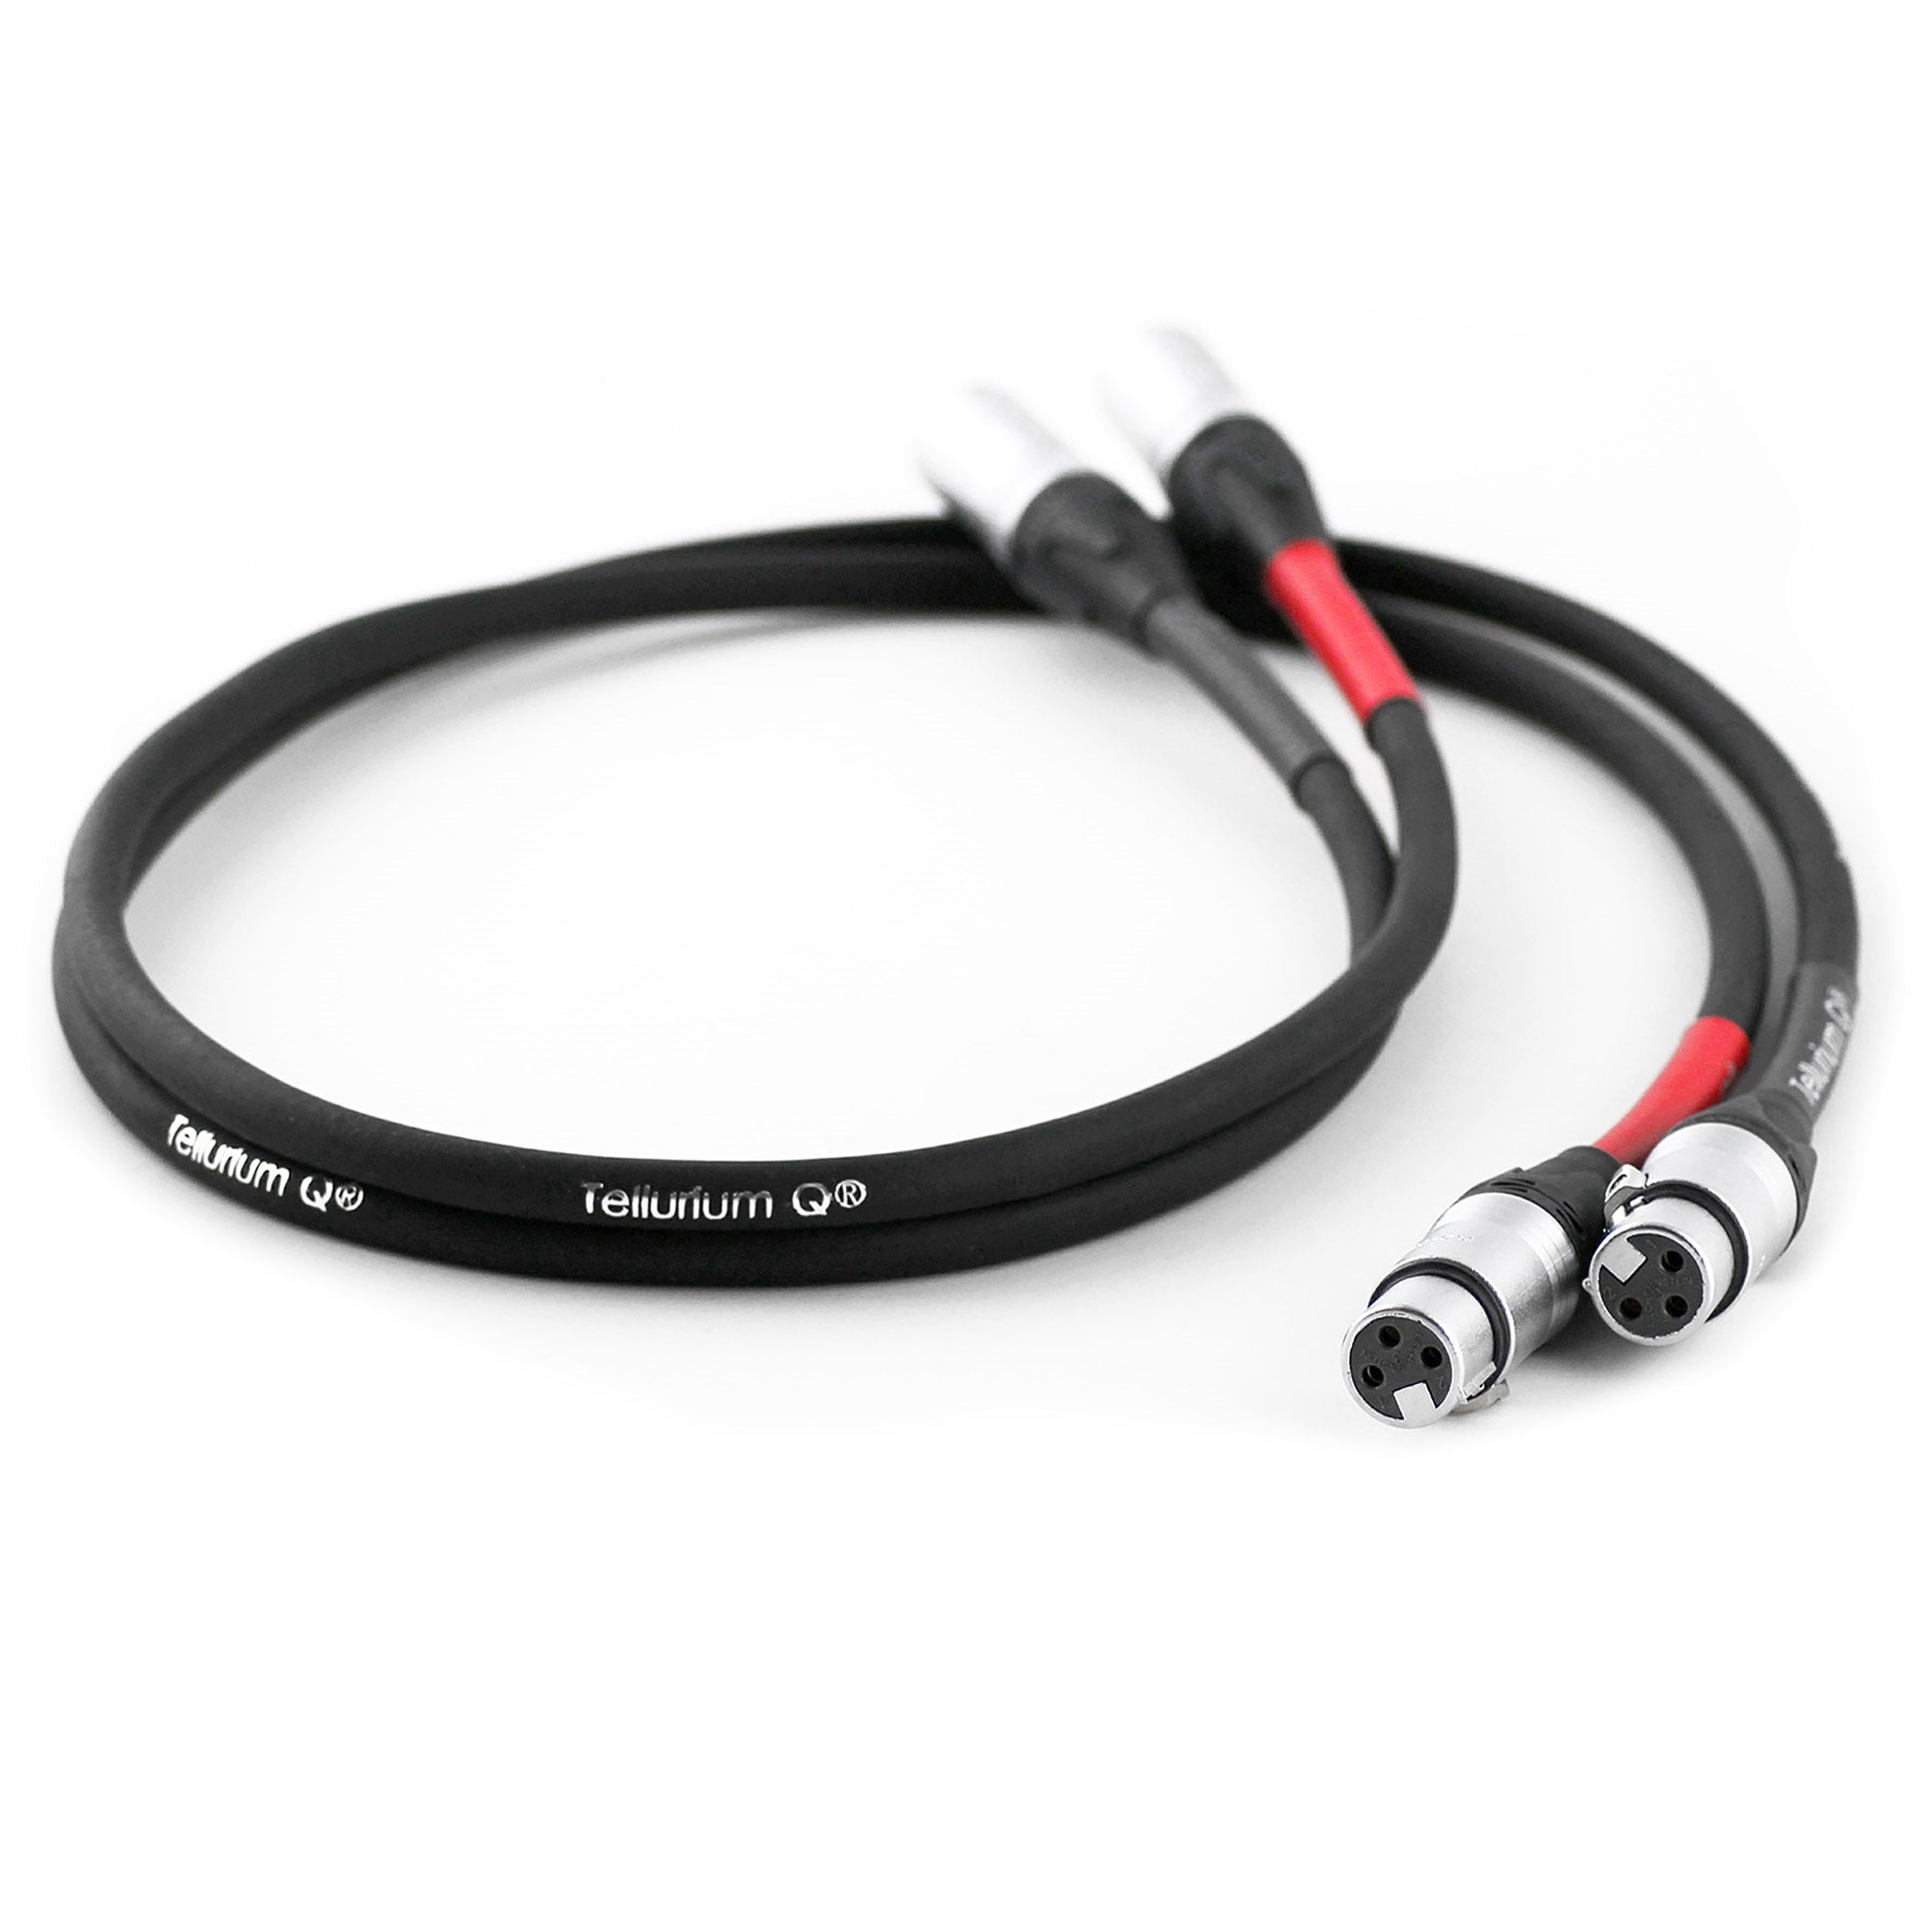 Tellurium Q Black XLR Cable (Pair)